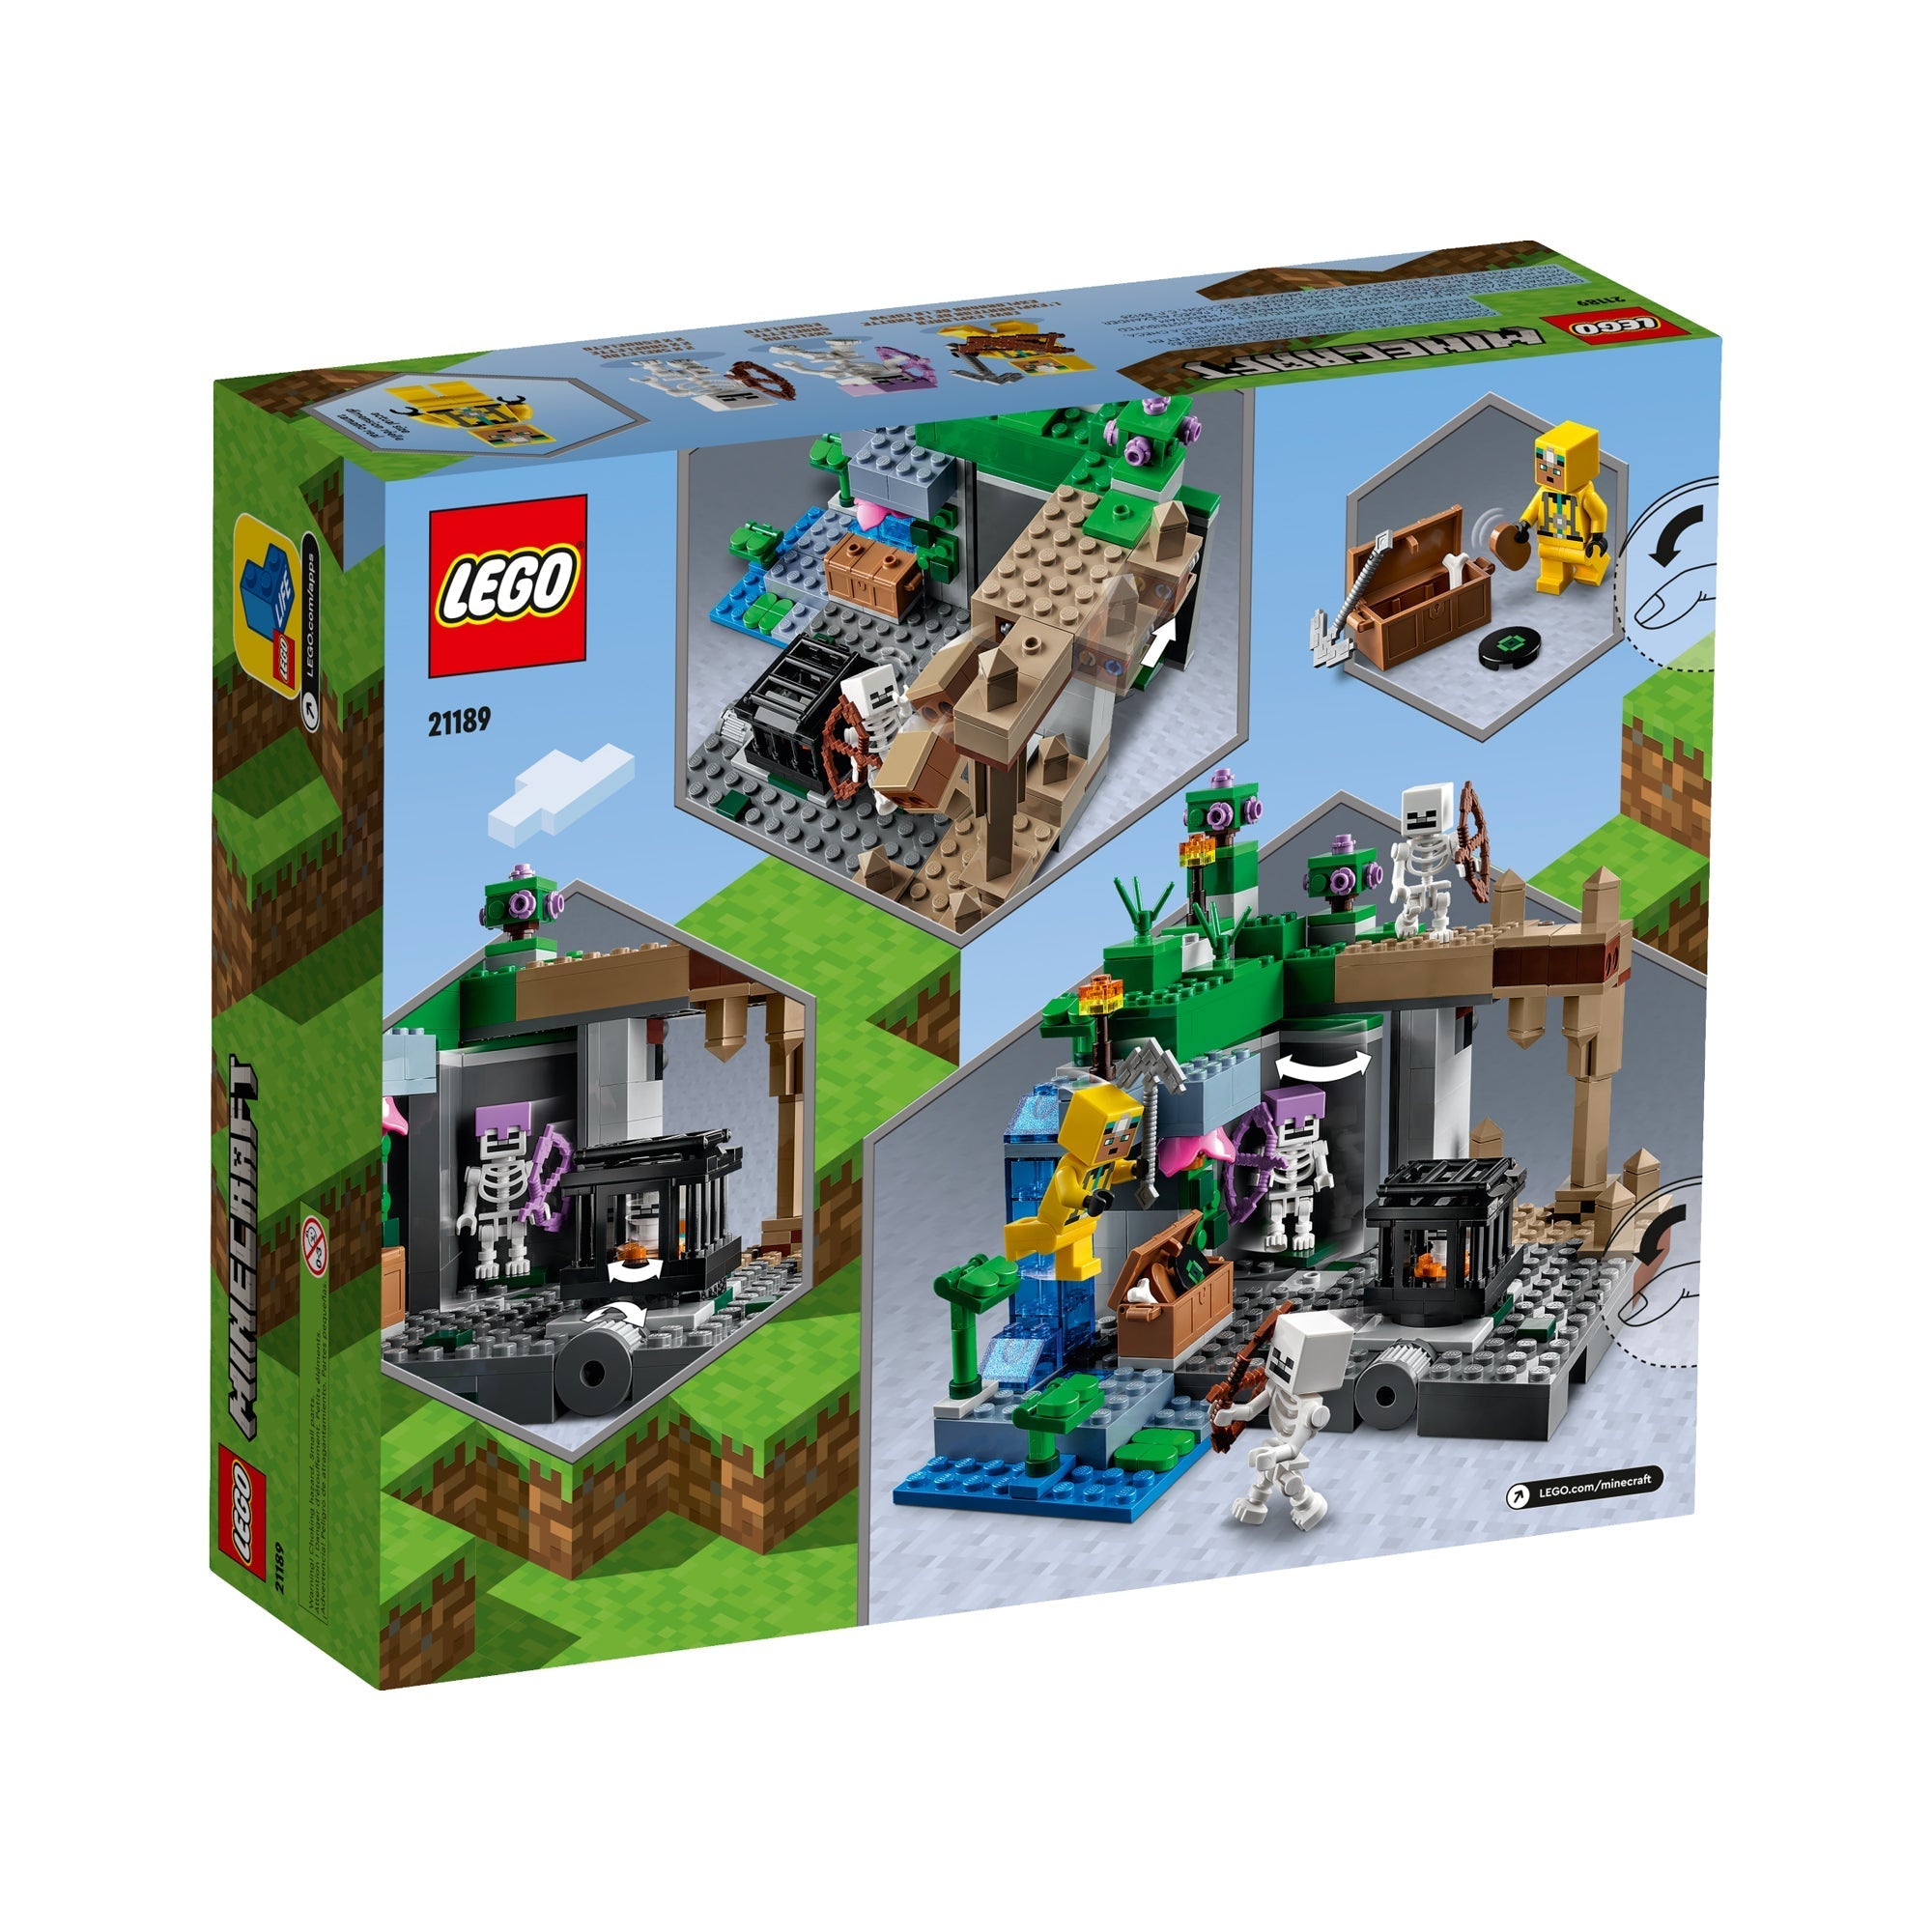 LEGO Minecraft The Villager Raid 21160 Ensemble de jeu d'action et